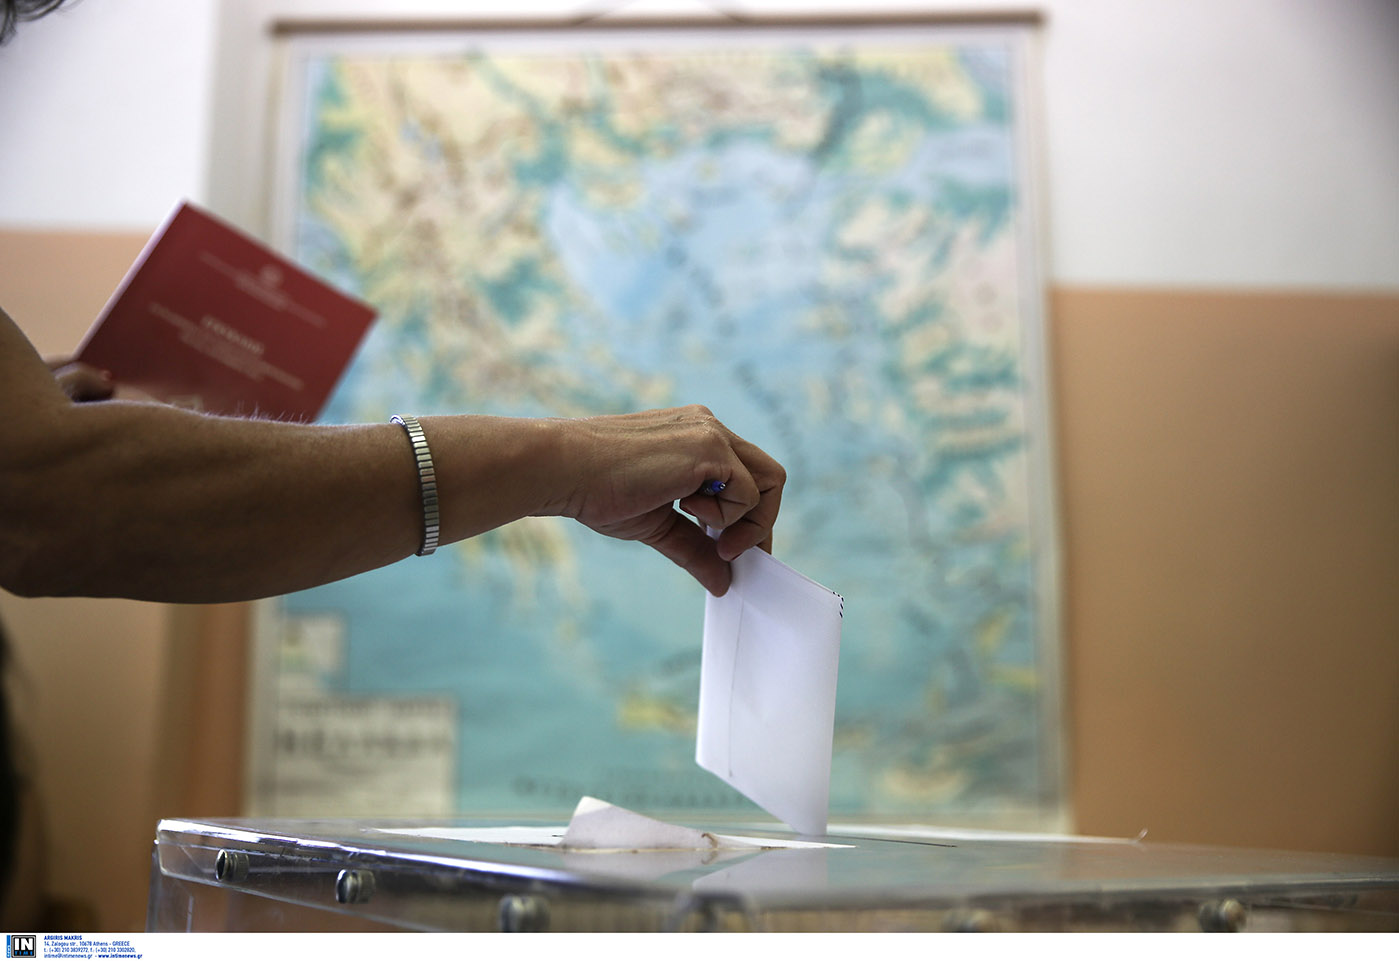 Πού ψηφίζω 2023: Δείτε σε ποιό εκλογικό τμήμα ψηφίζετε μέσω του gov.gr